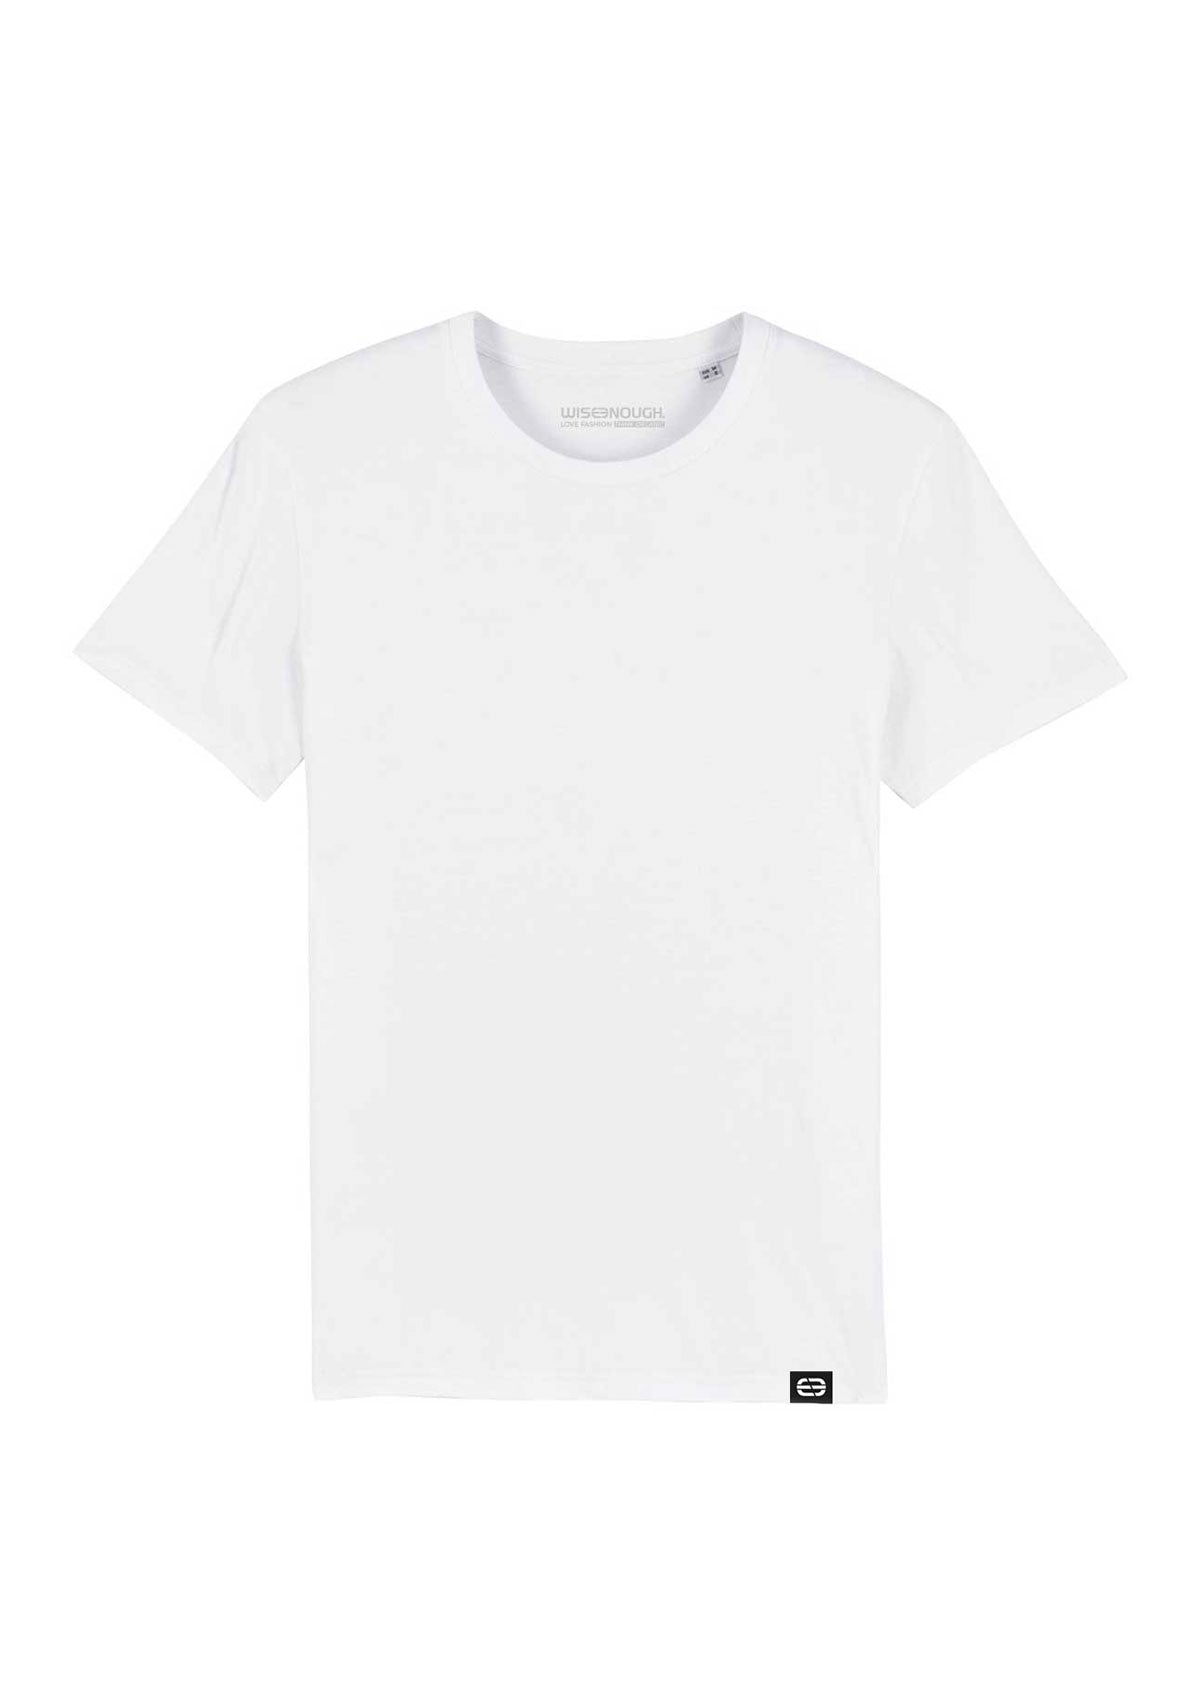 Unisex Basic T-Shirt - White - wise enough